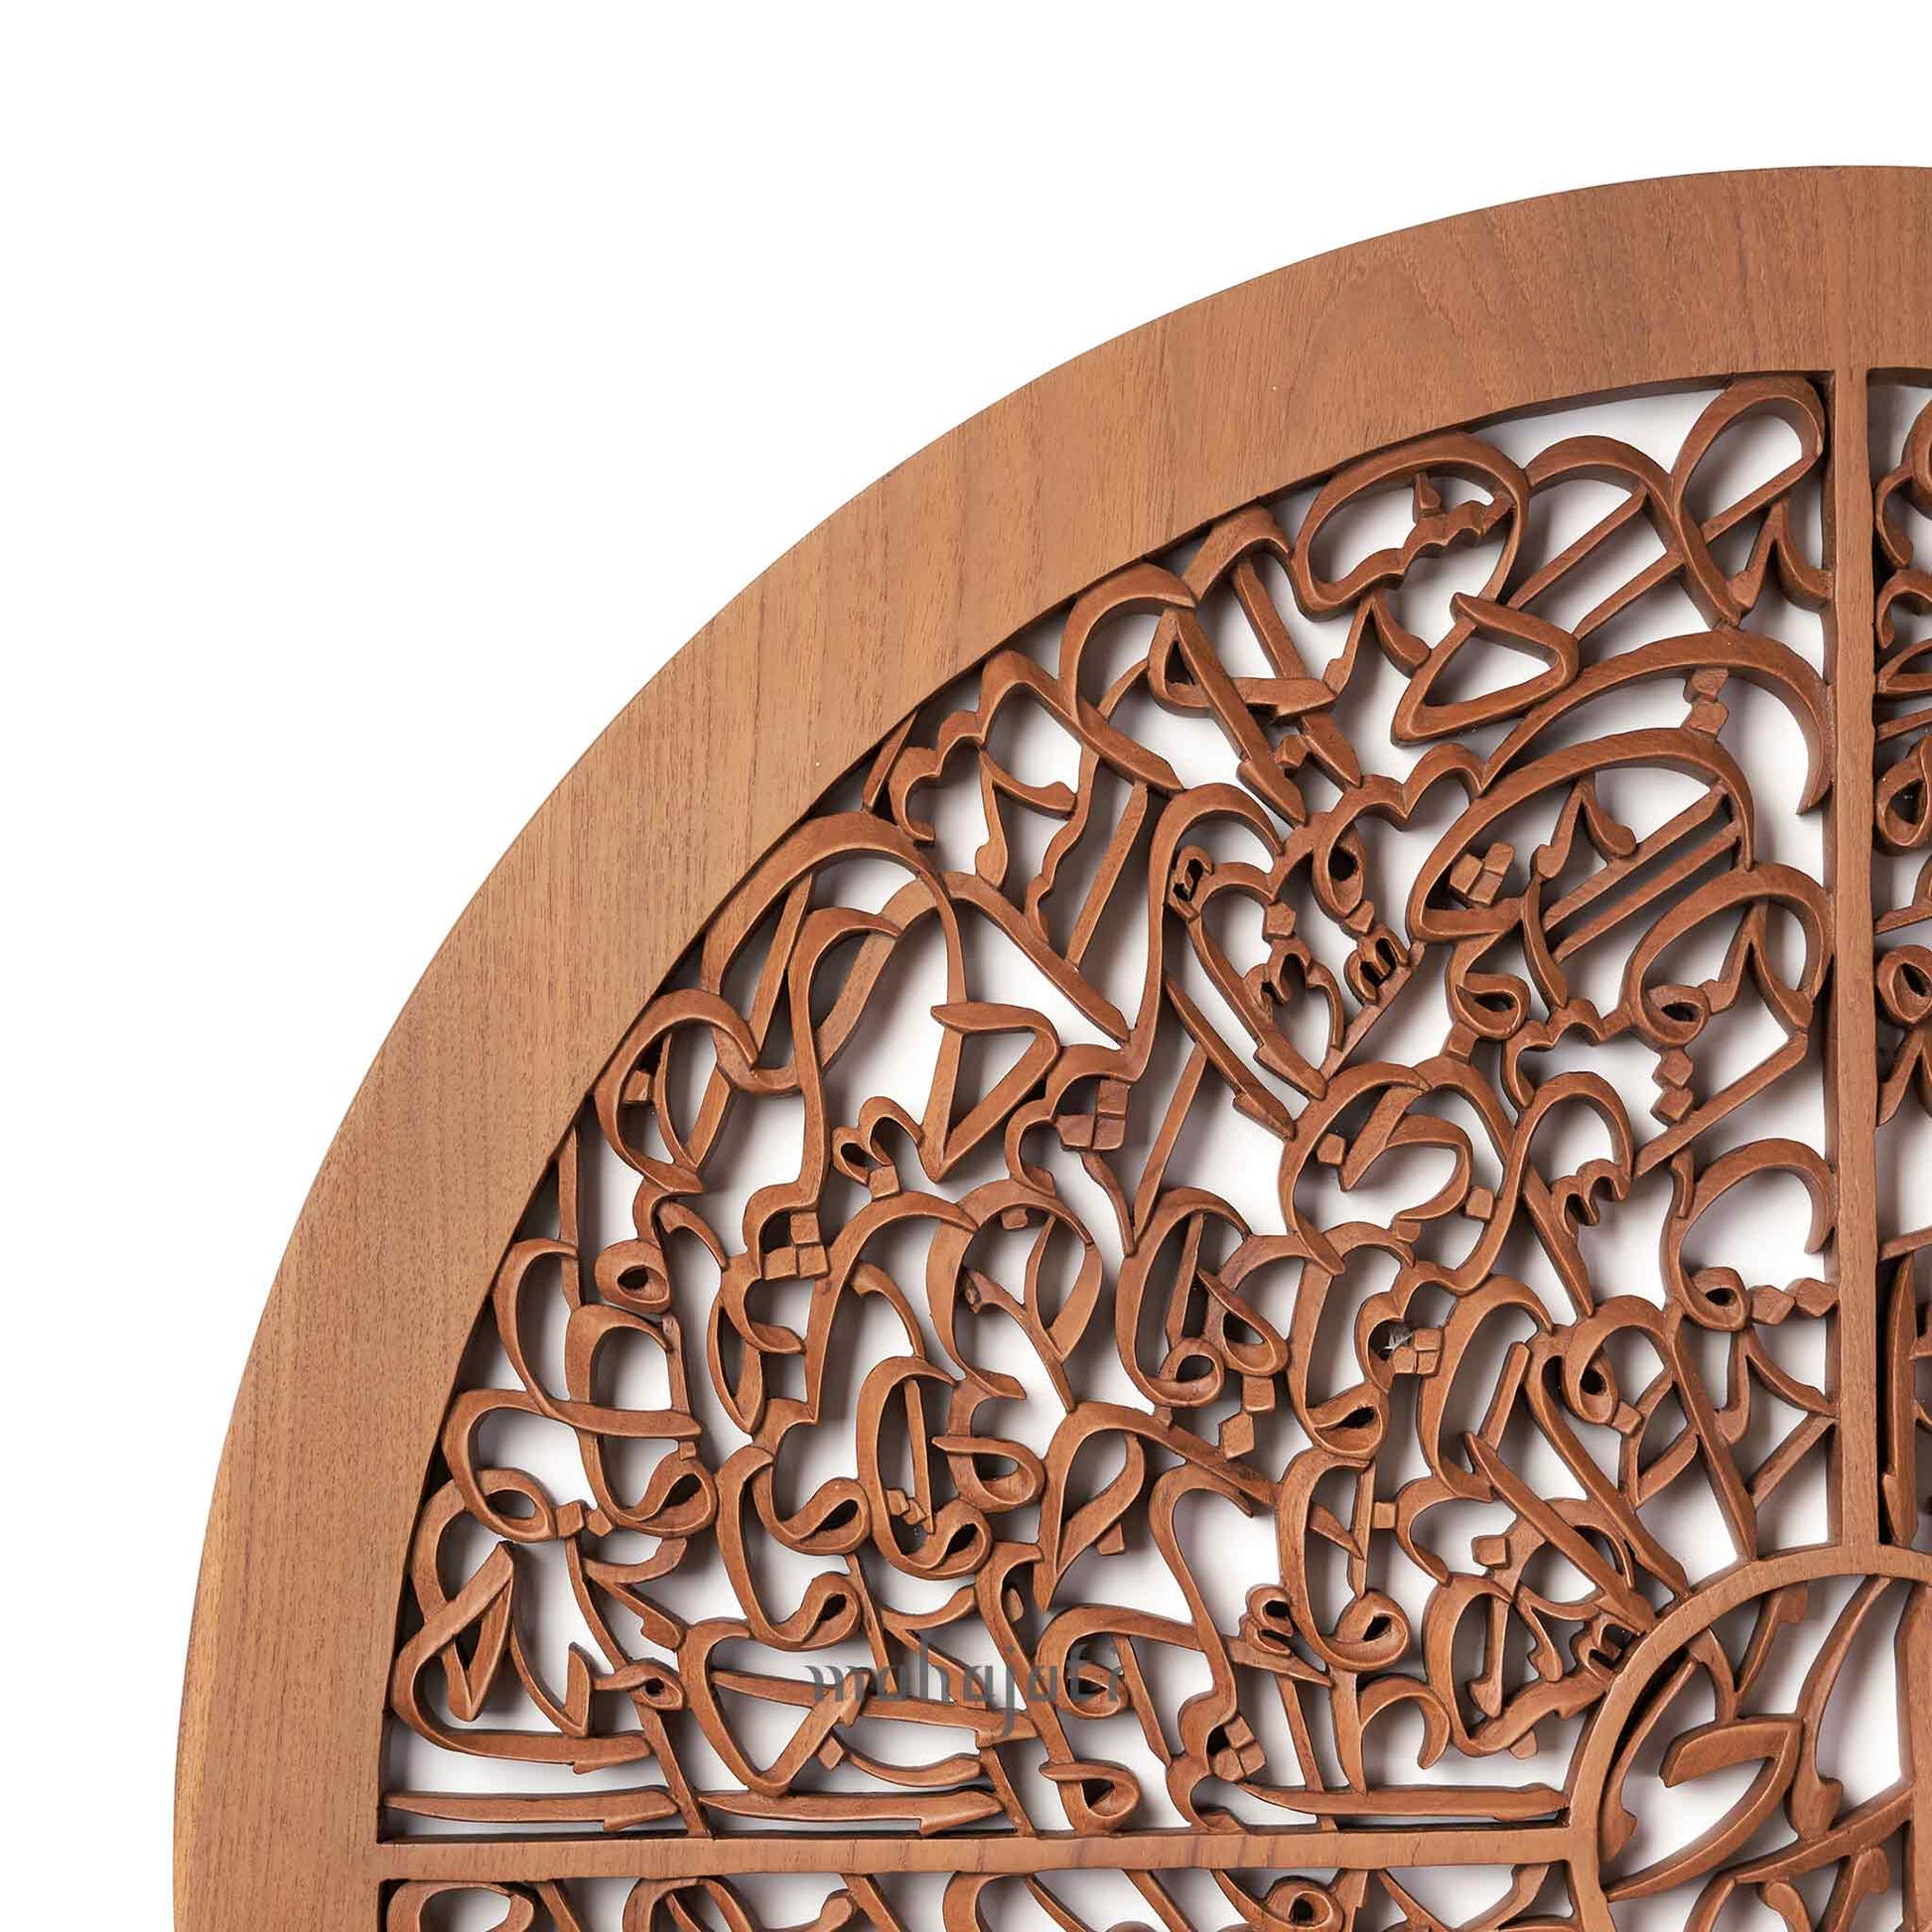 ديكور حائط بالخط الإسلامي من 4 Qul ، منحوت يدويا من خشب الساج الفاخر. إنه مثالي لتزيين المنزل الإسلامي أو للهدايا.